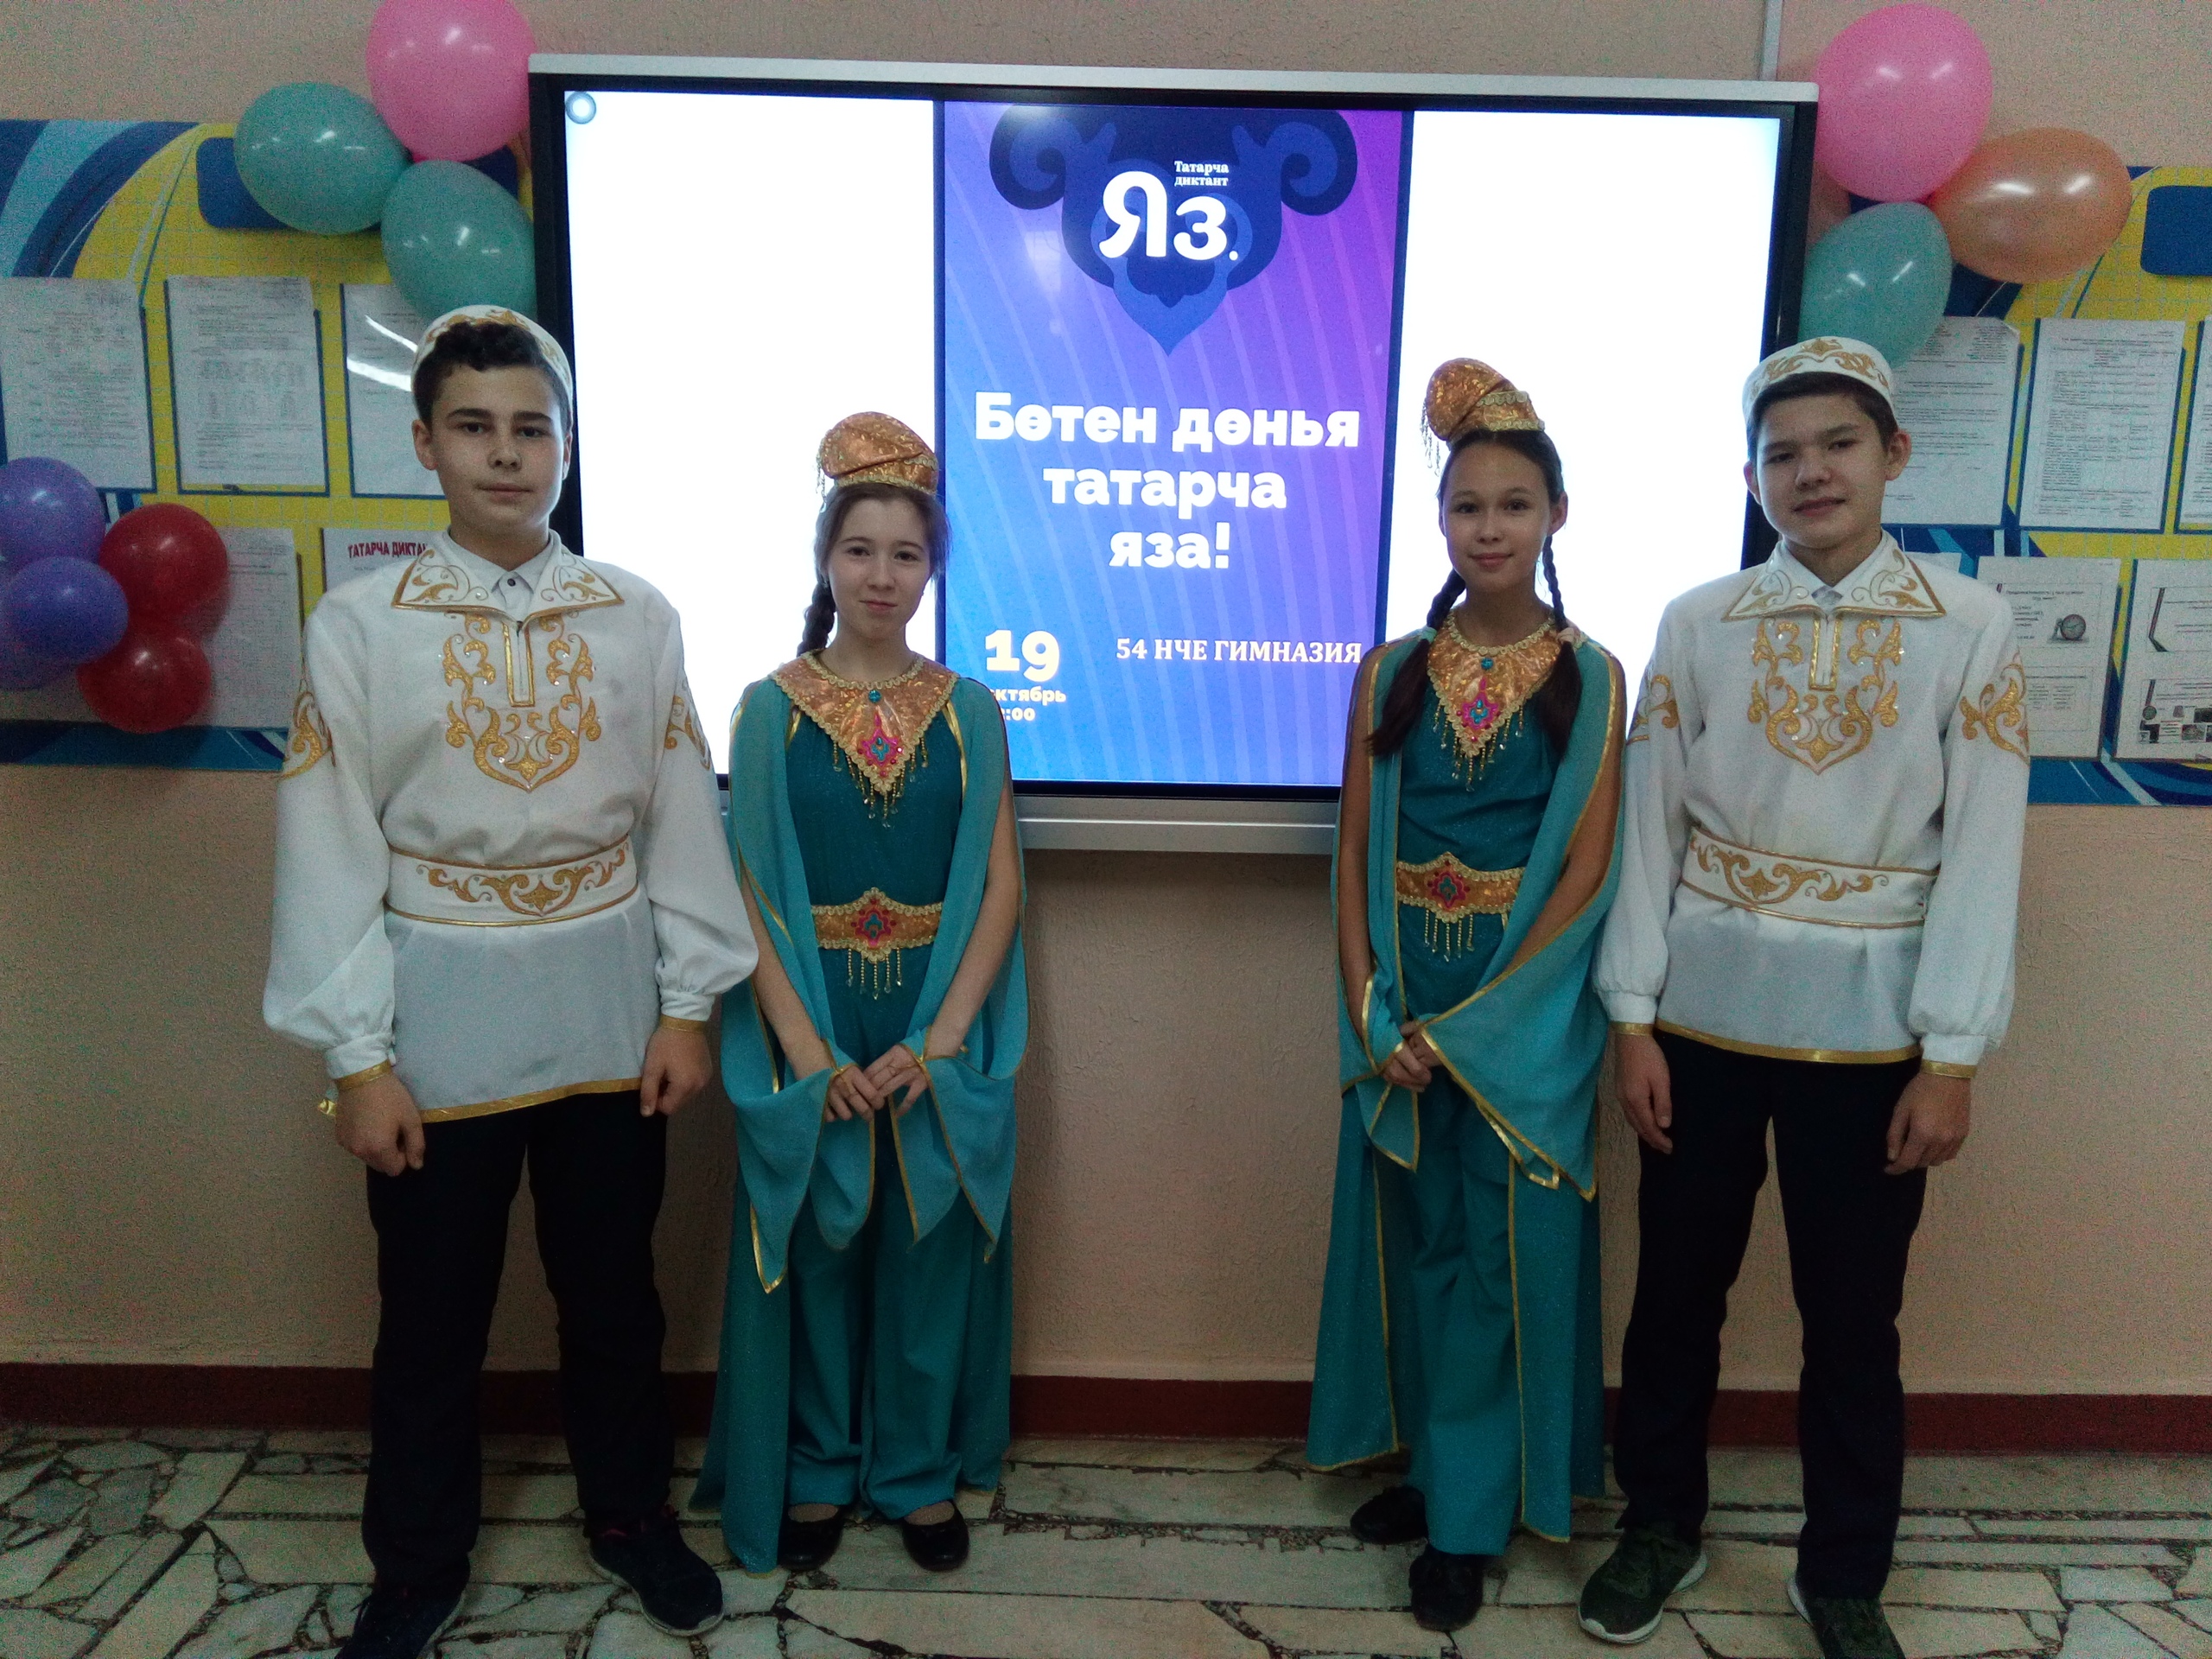 Бөтен дөнья татарлары диктант язды